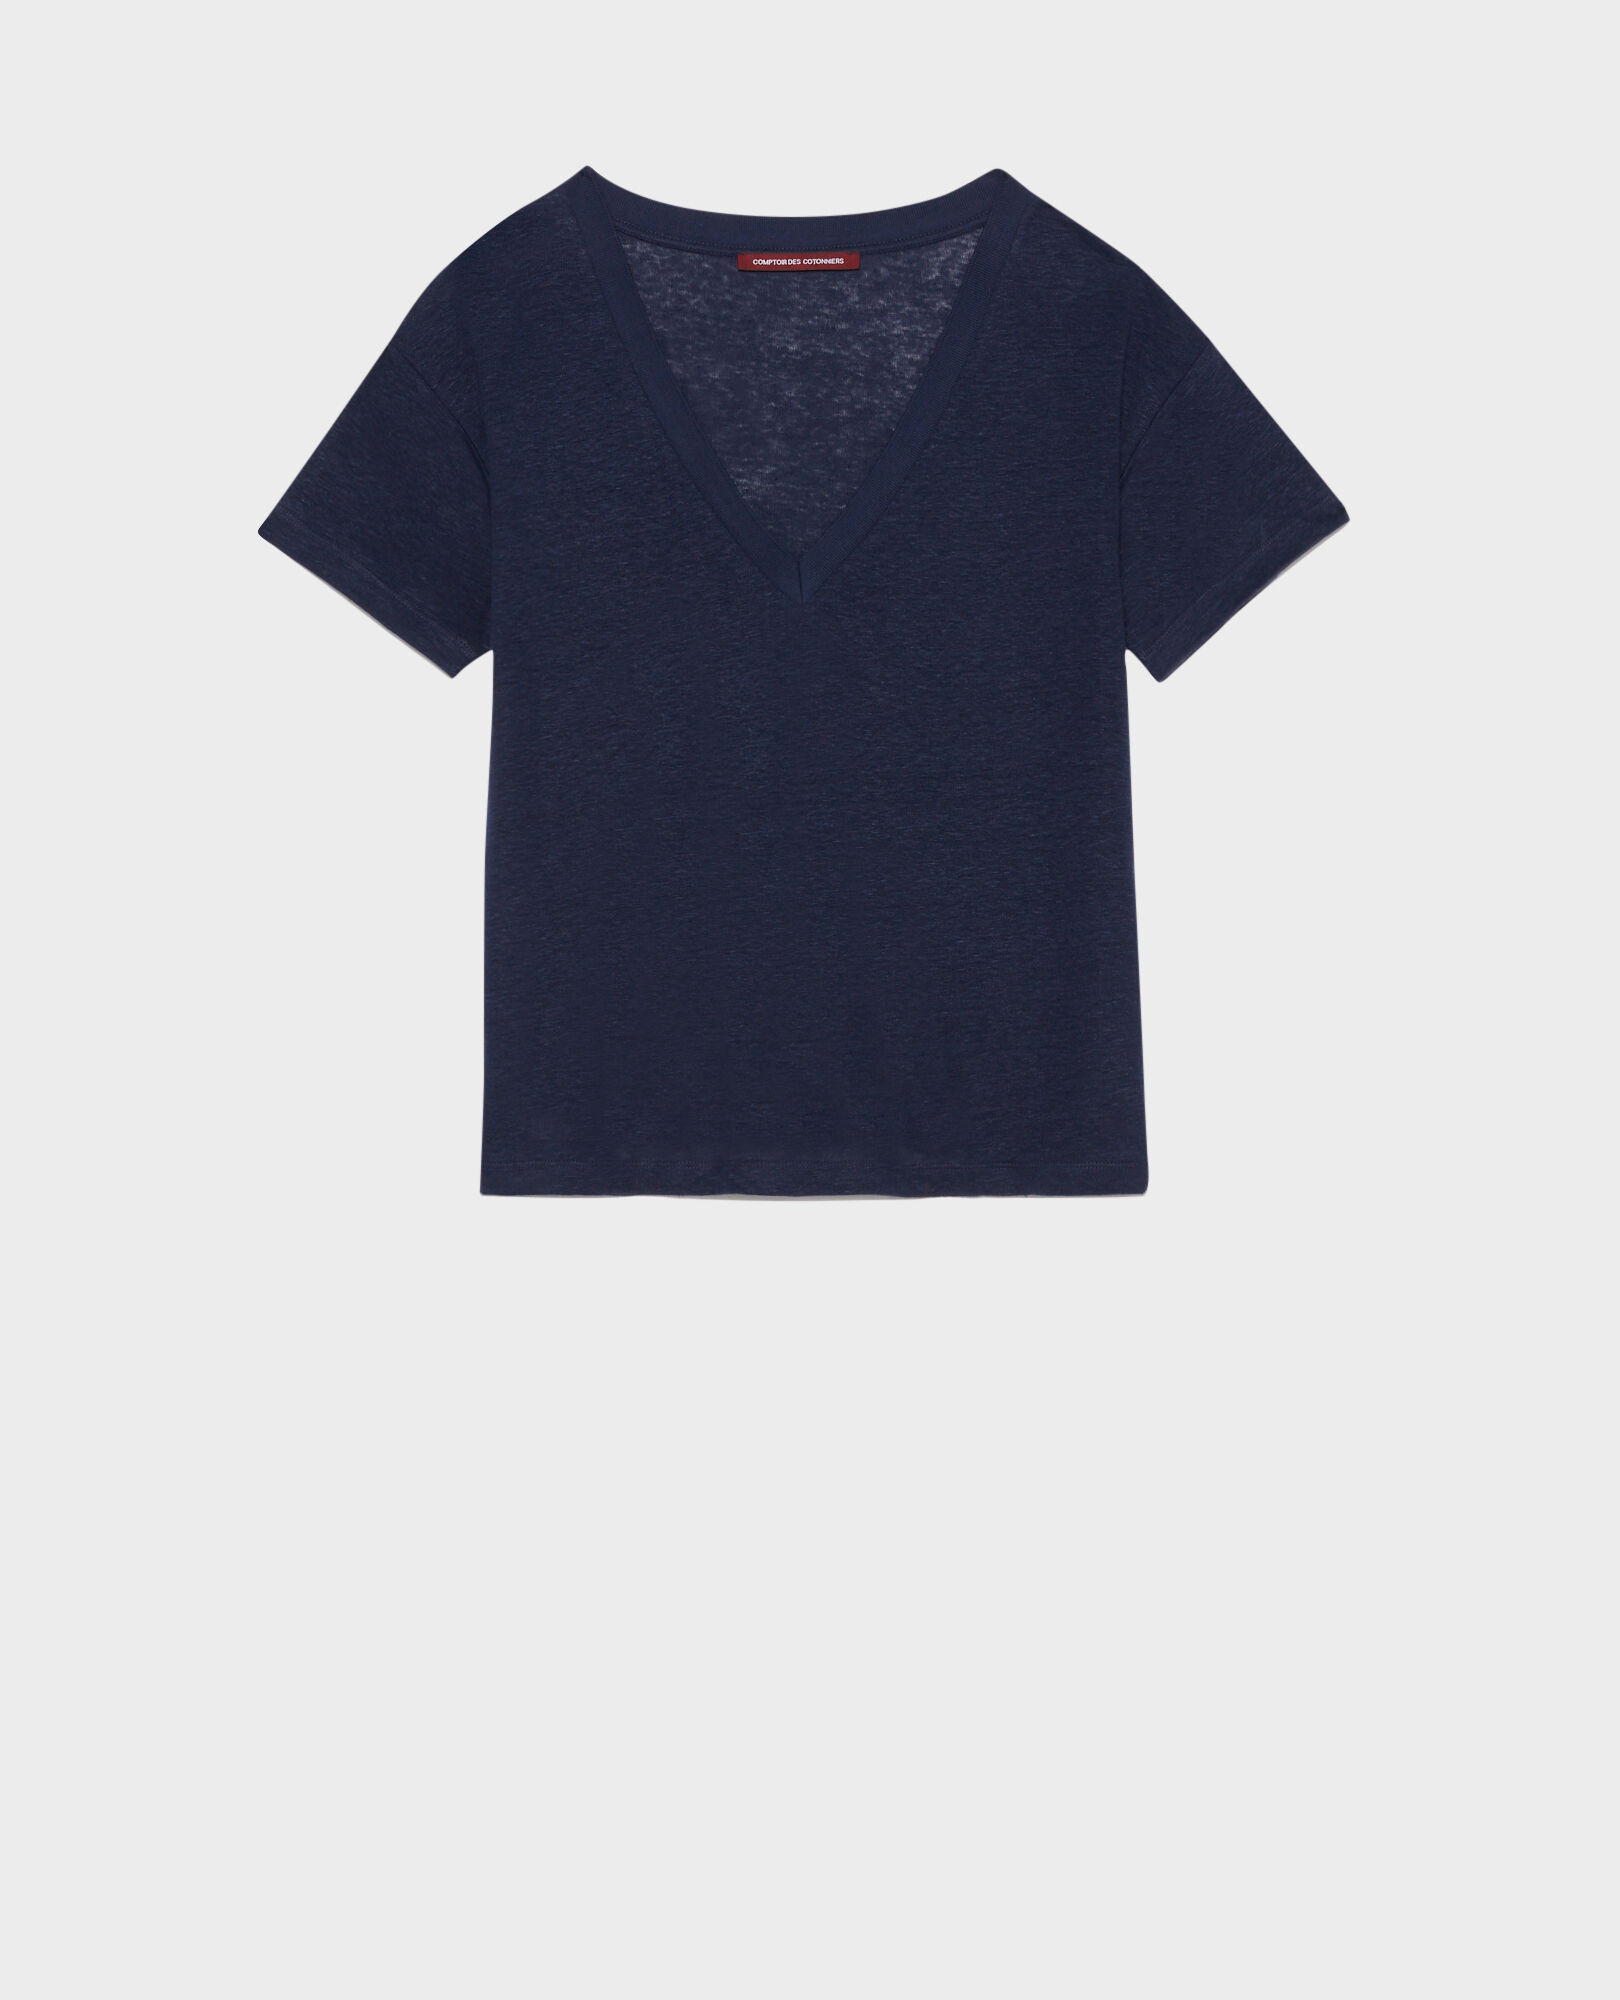 SARAH - T-Shirt mit V-Ausschnitt aus Leinen Maritime blue Locmelar